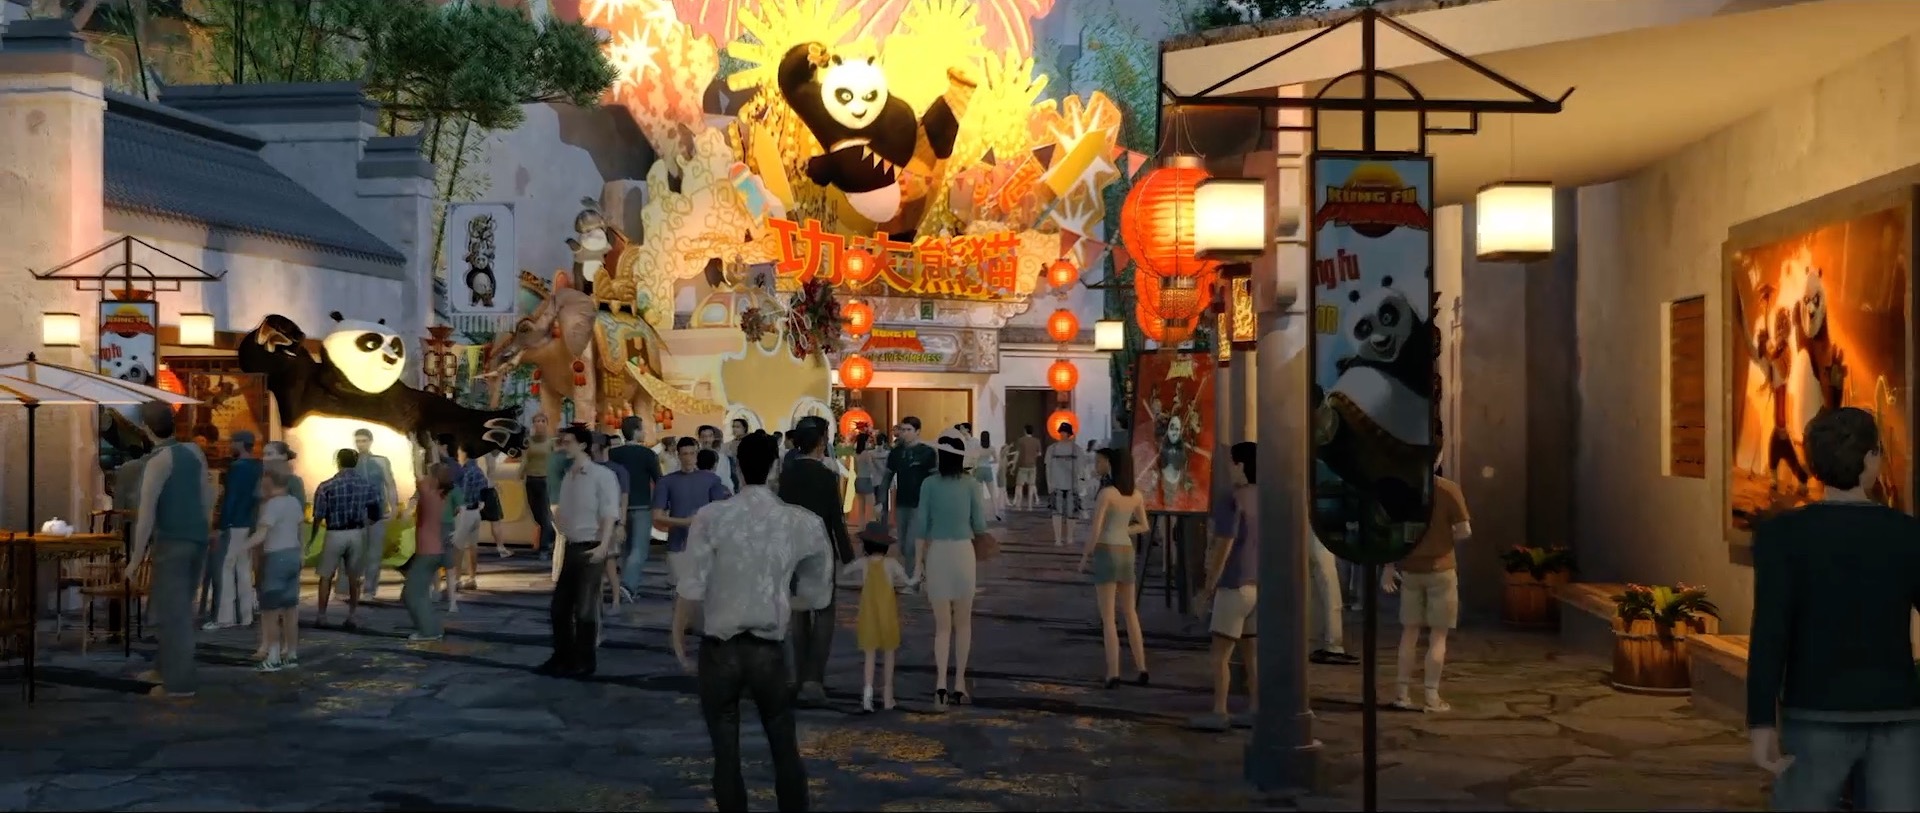 北京环球影城7大主题区官方介绍 与变形金刚相约魔法世界